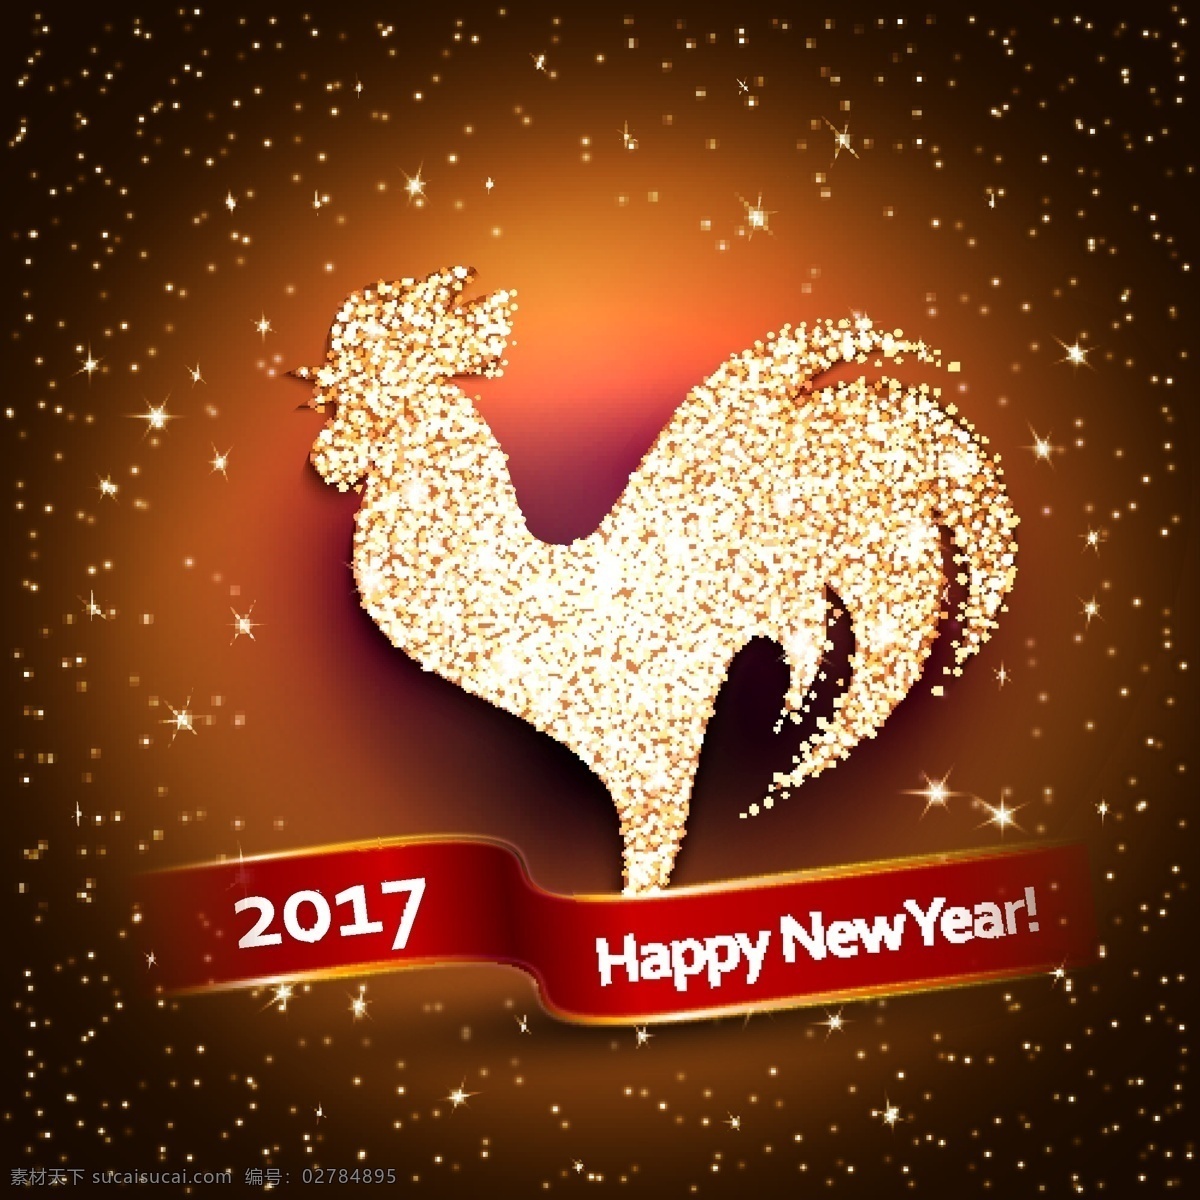 金鸡 2017 新年 快乐 背景 棕色背景 数字 英文 艺术字 星光 新年快乐 背景素材 矢量绶带 文化艺术 节日庆祝